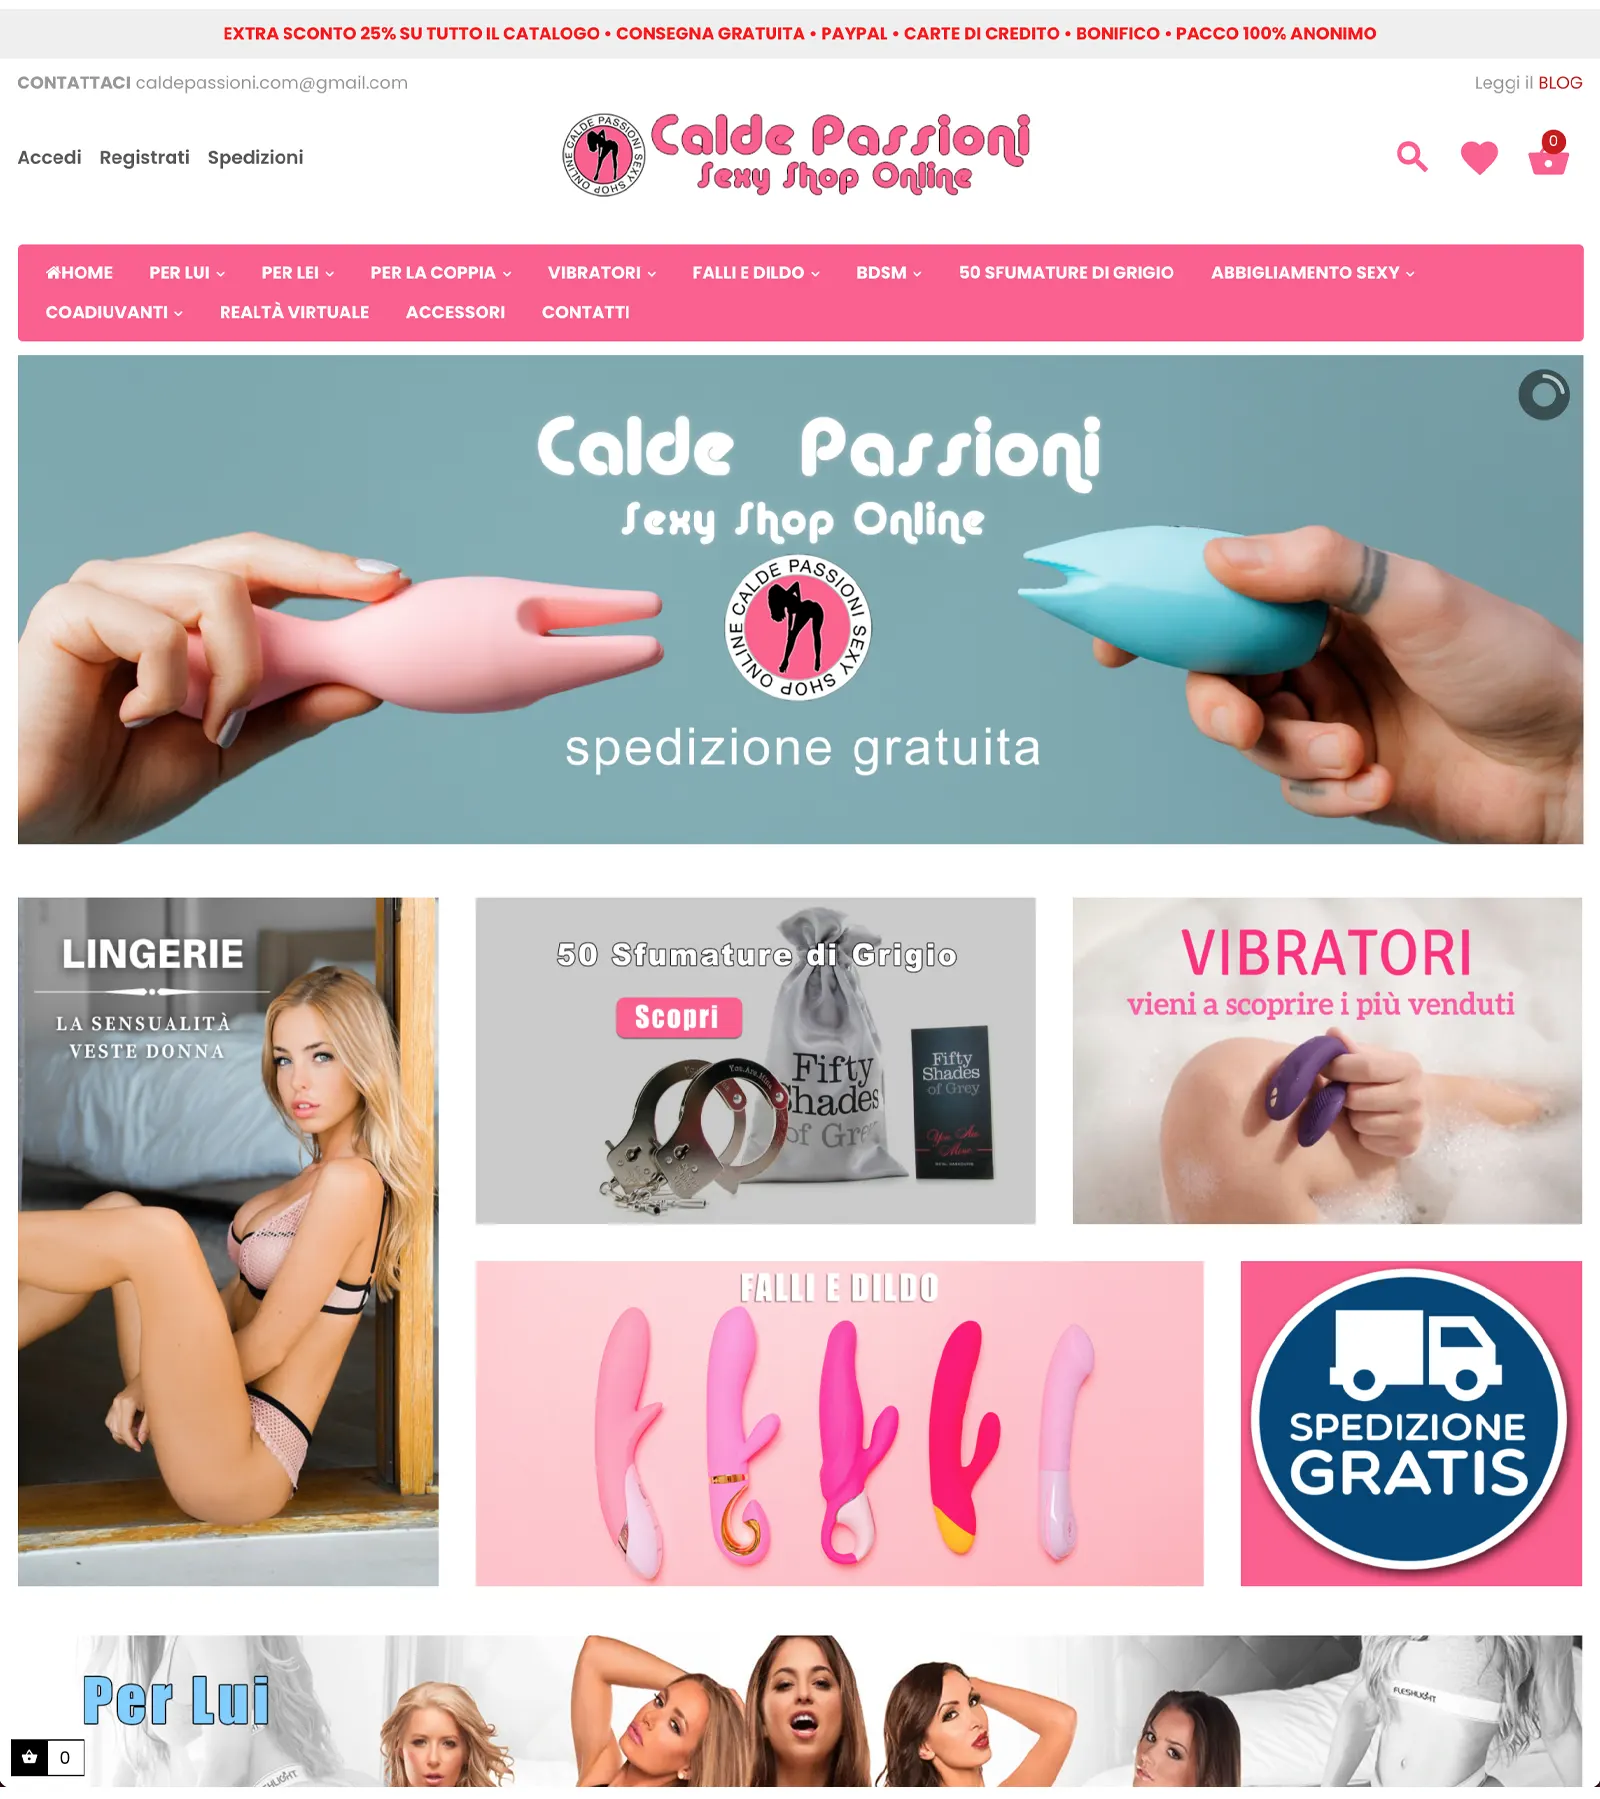 Portfolio Publivirtual Web Agency Roma - Progetto Calde Passioni